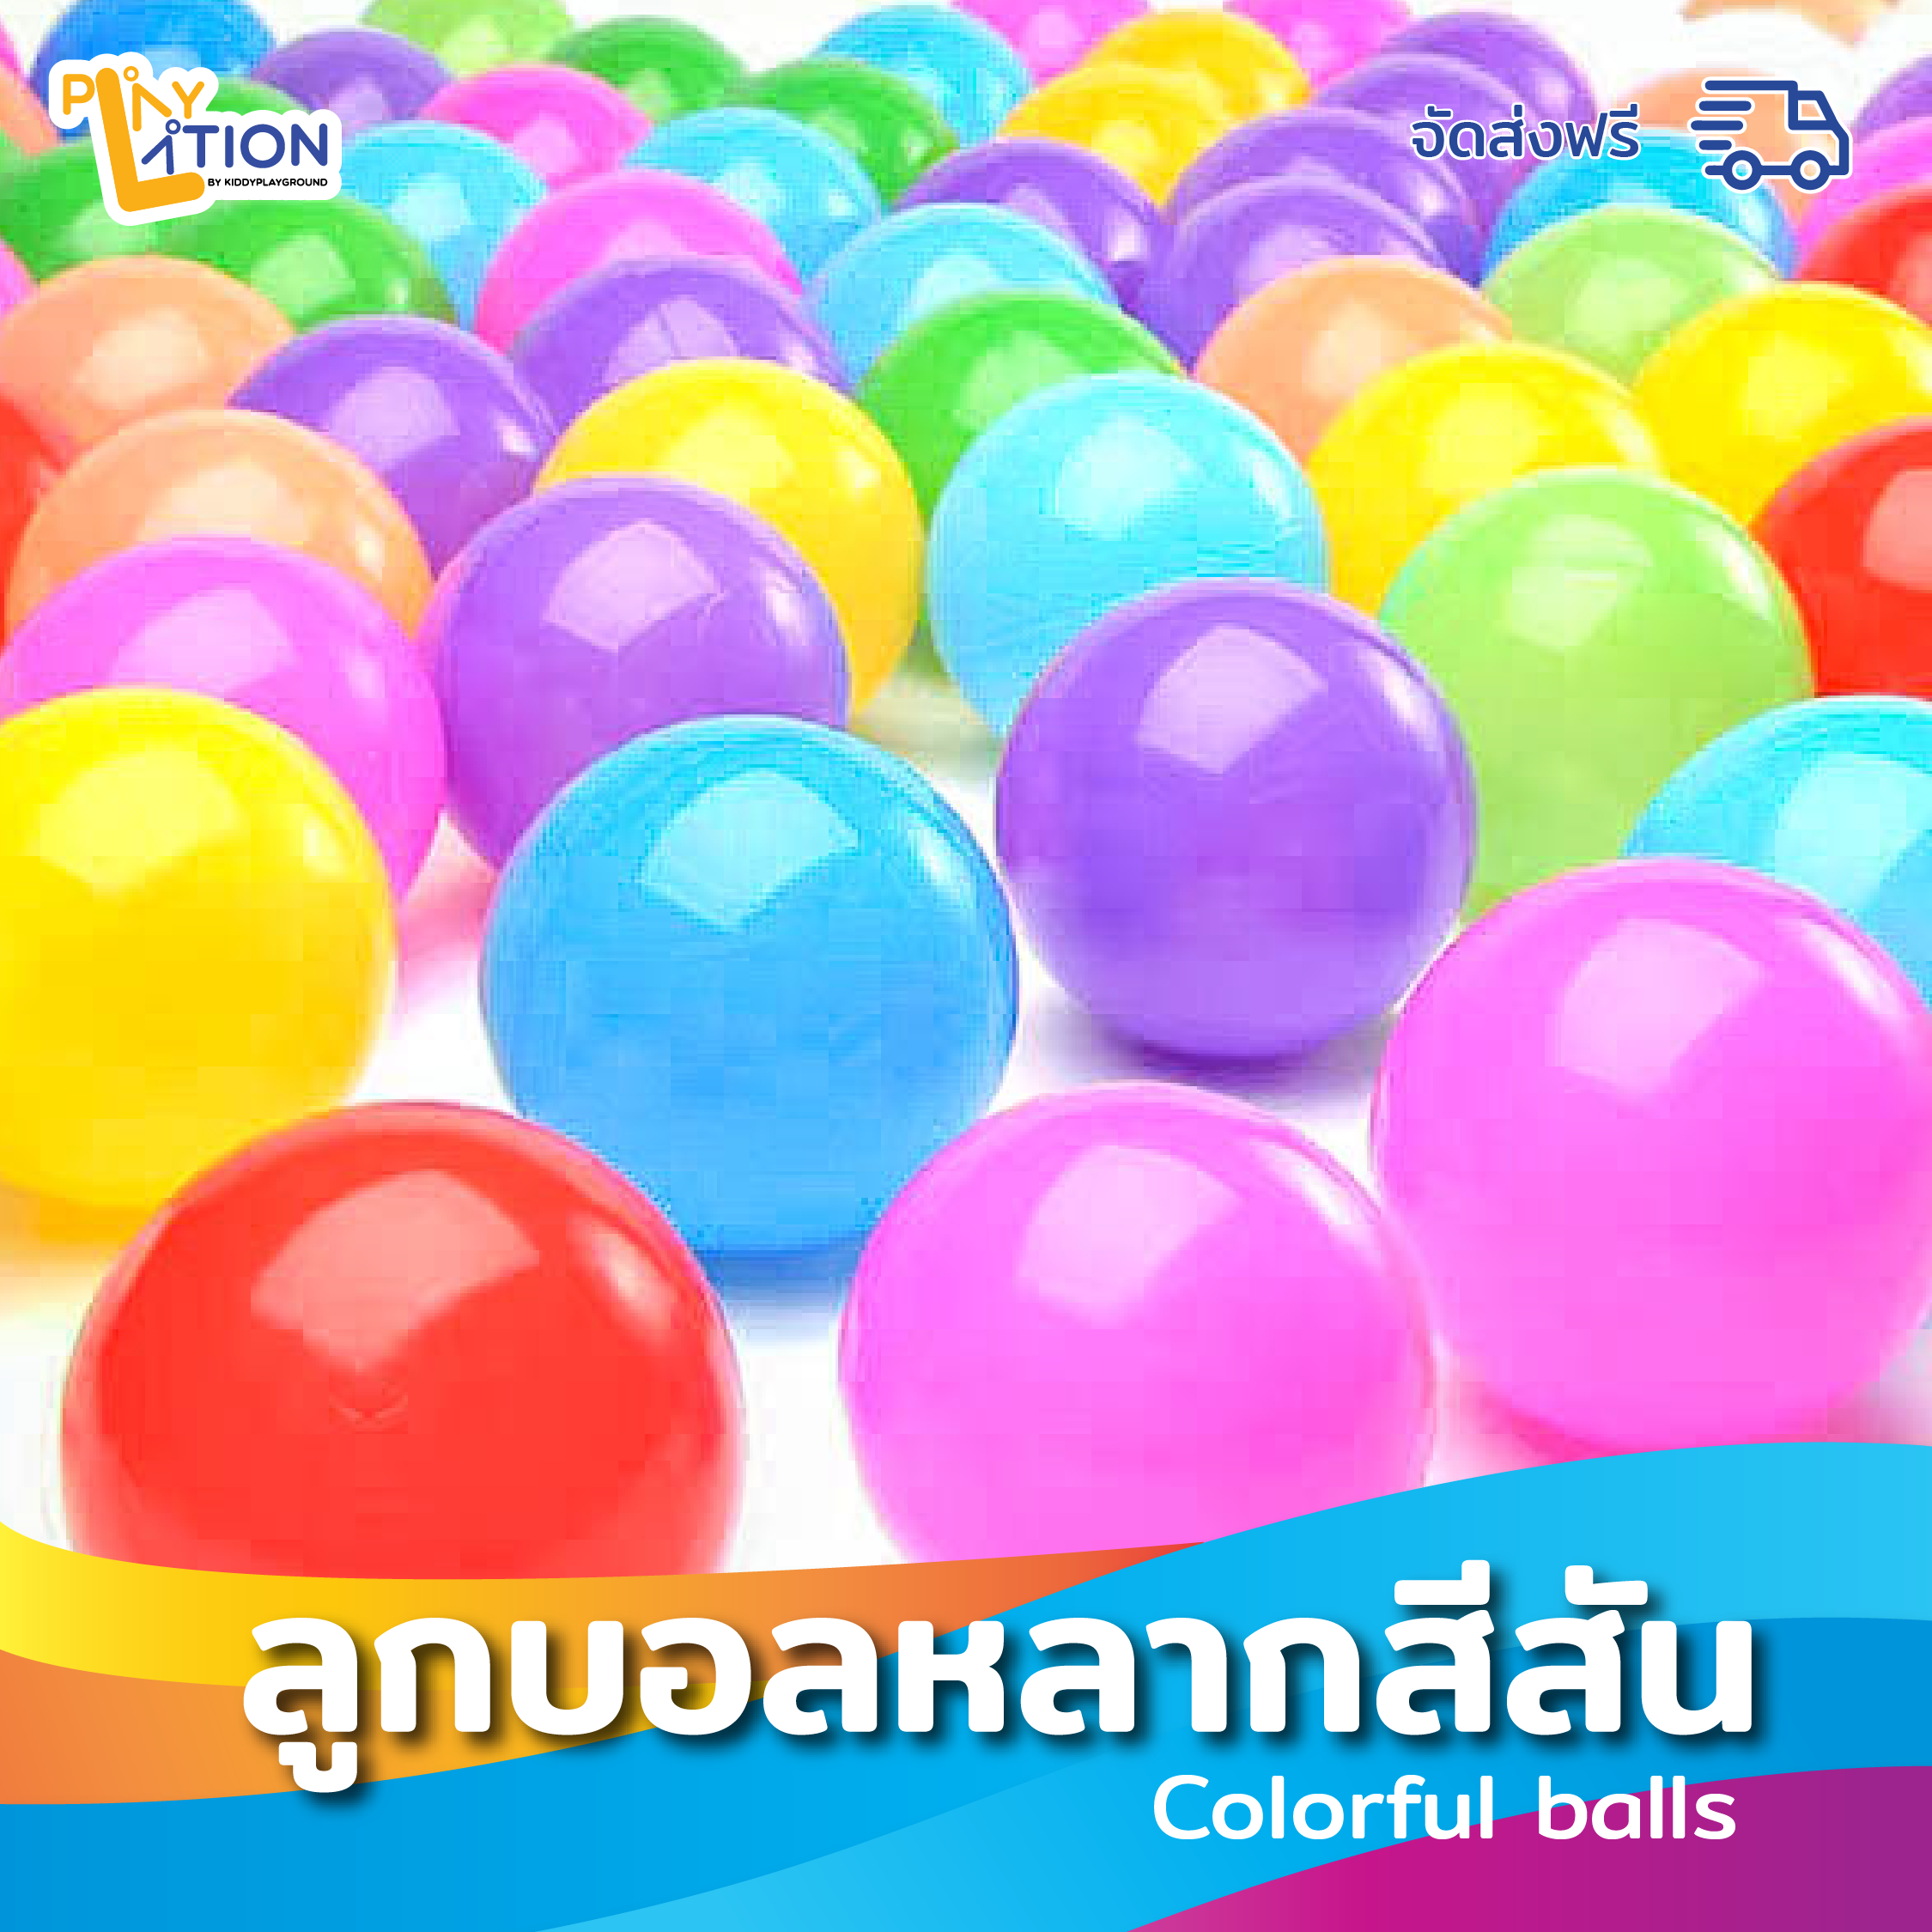 Colorful balls ลูกบอลหลากสีสัน คละสี 500 ลูก ขนาด 2.9 นิ้ว  มีหลากหลายสี ลูกบอลยืดหยุ่นไม่เจ็บไม่เป็นอันตรายต่อเด็ก  ทำจากพลาสติกอย่างดี